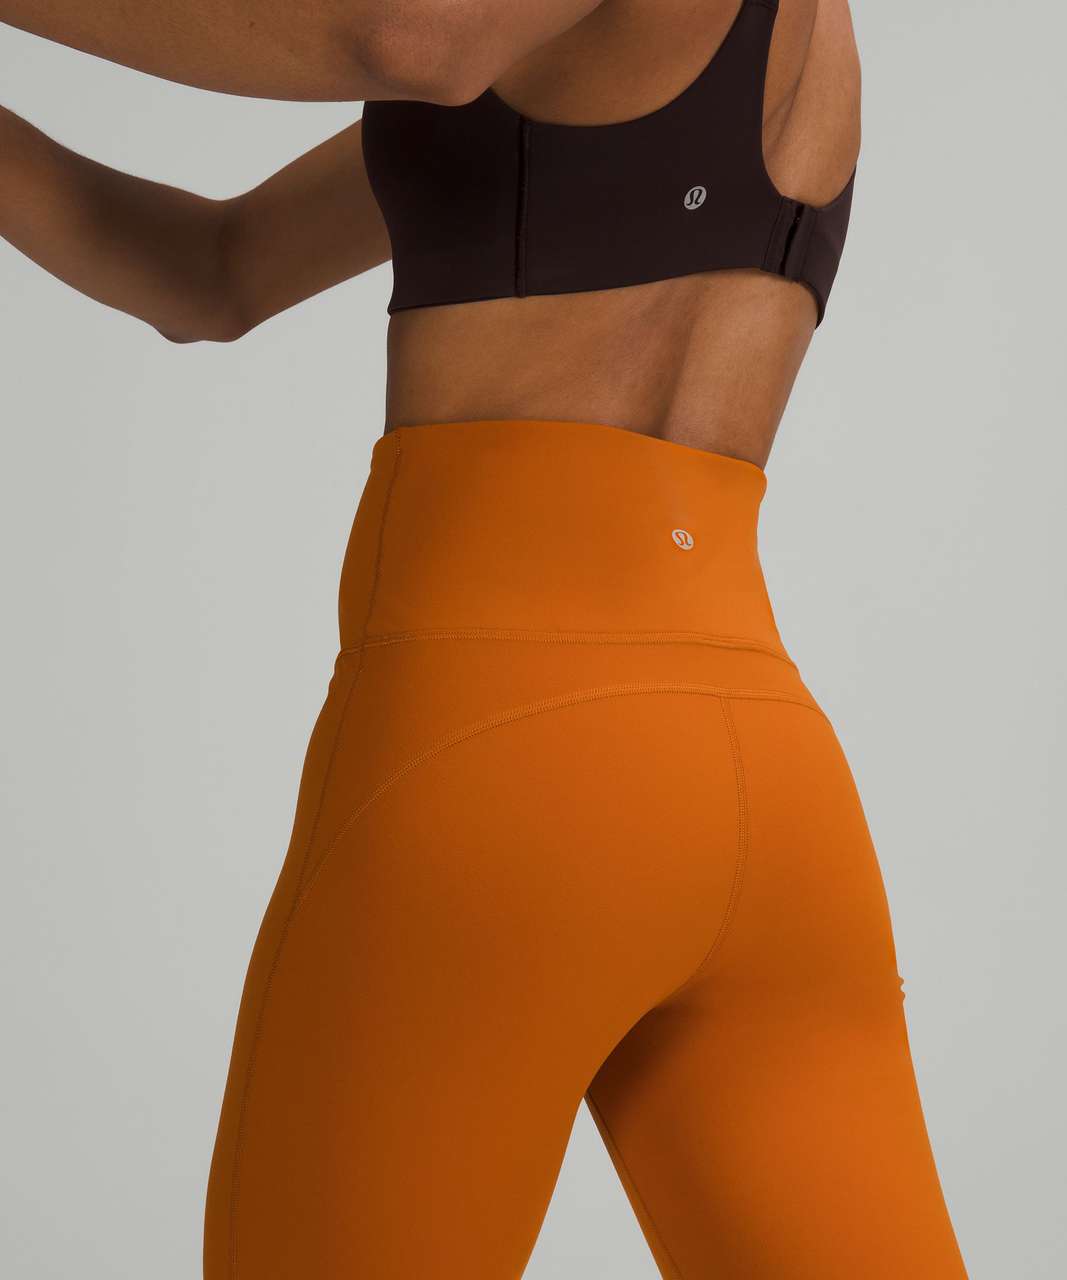 Lululemon Groove Super-High-Rise Flared Pant Nulu - Roasted Orange